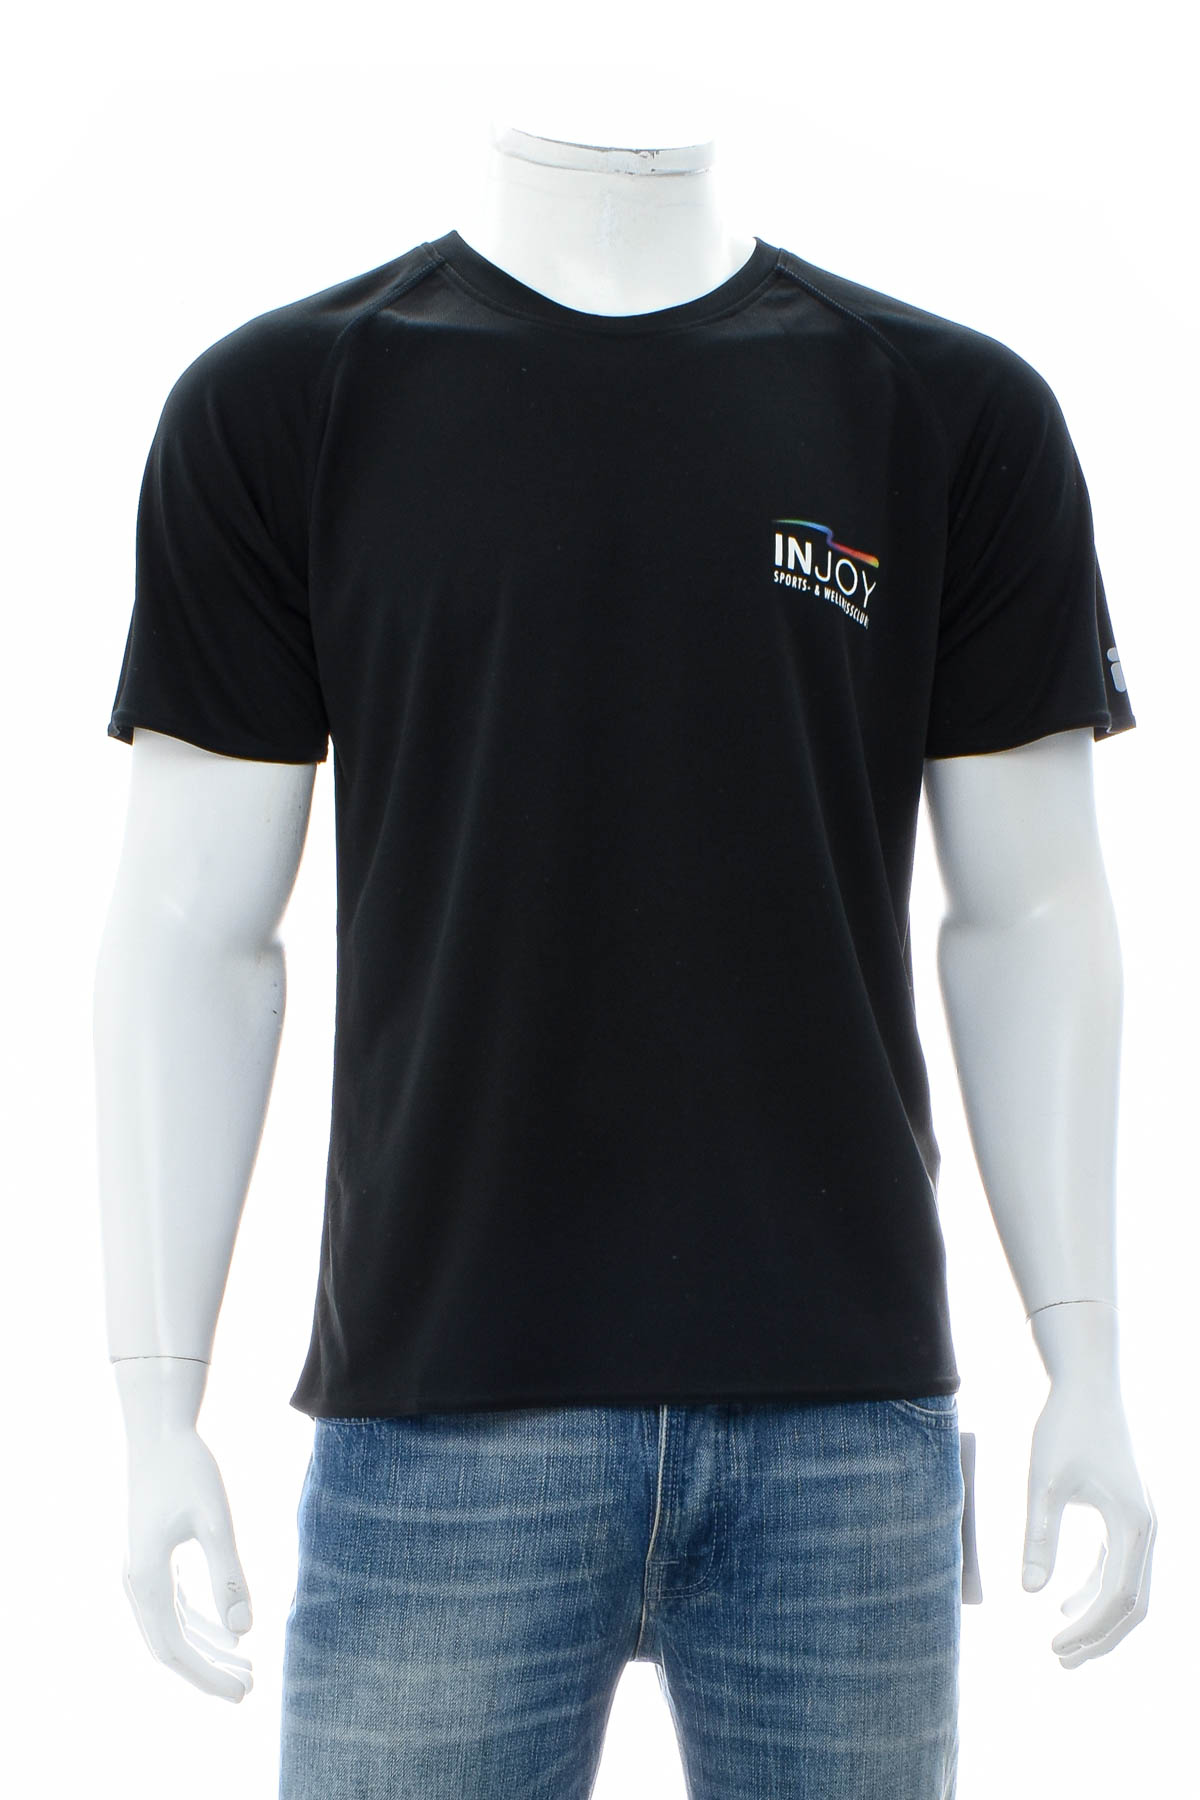 Мъжка тениска - FILA - 0